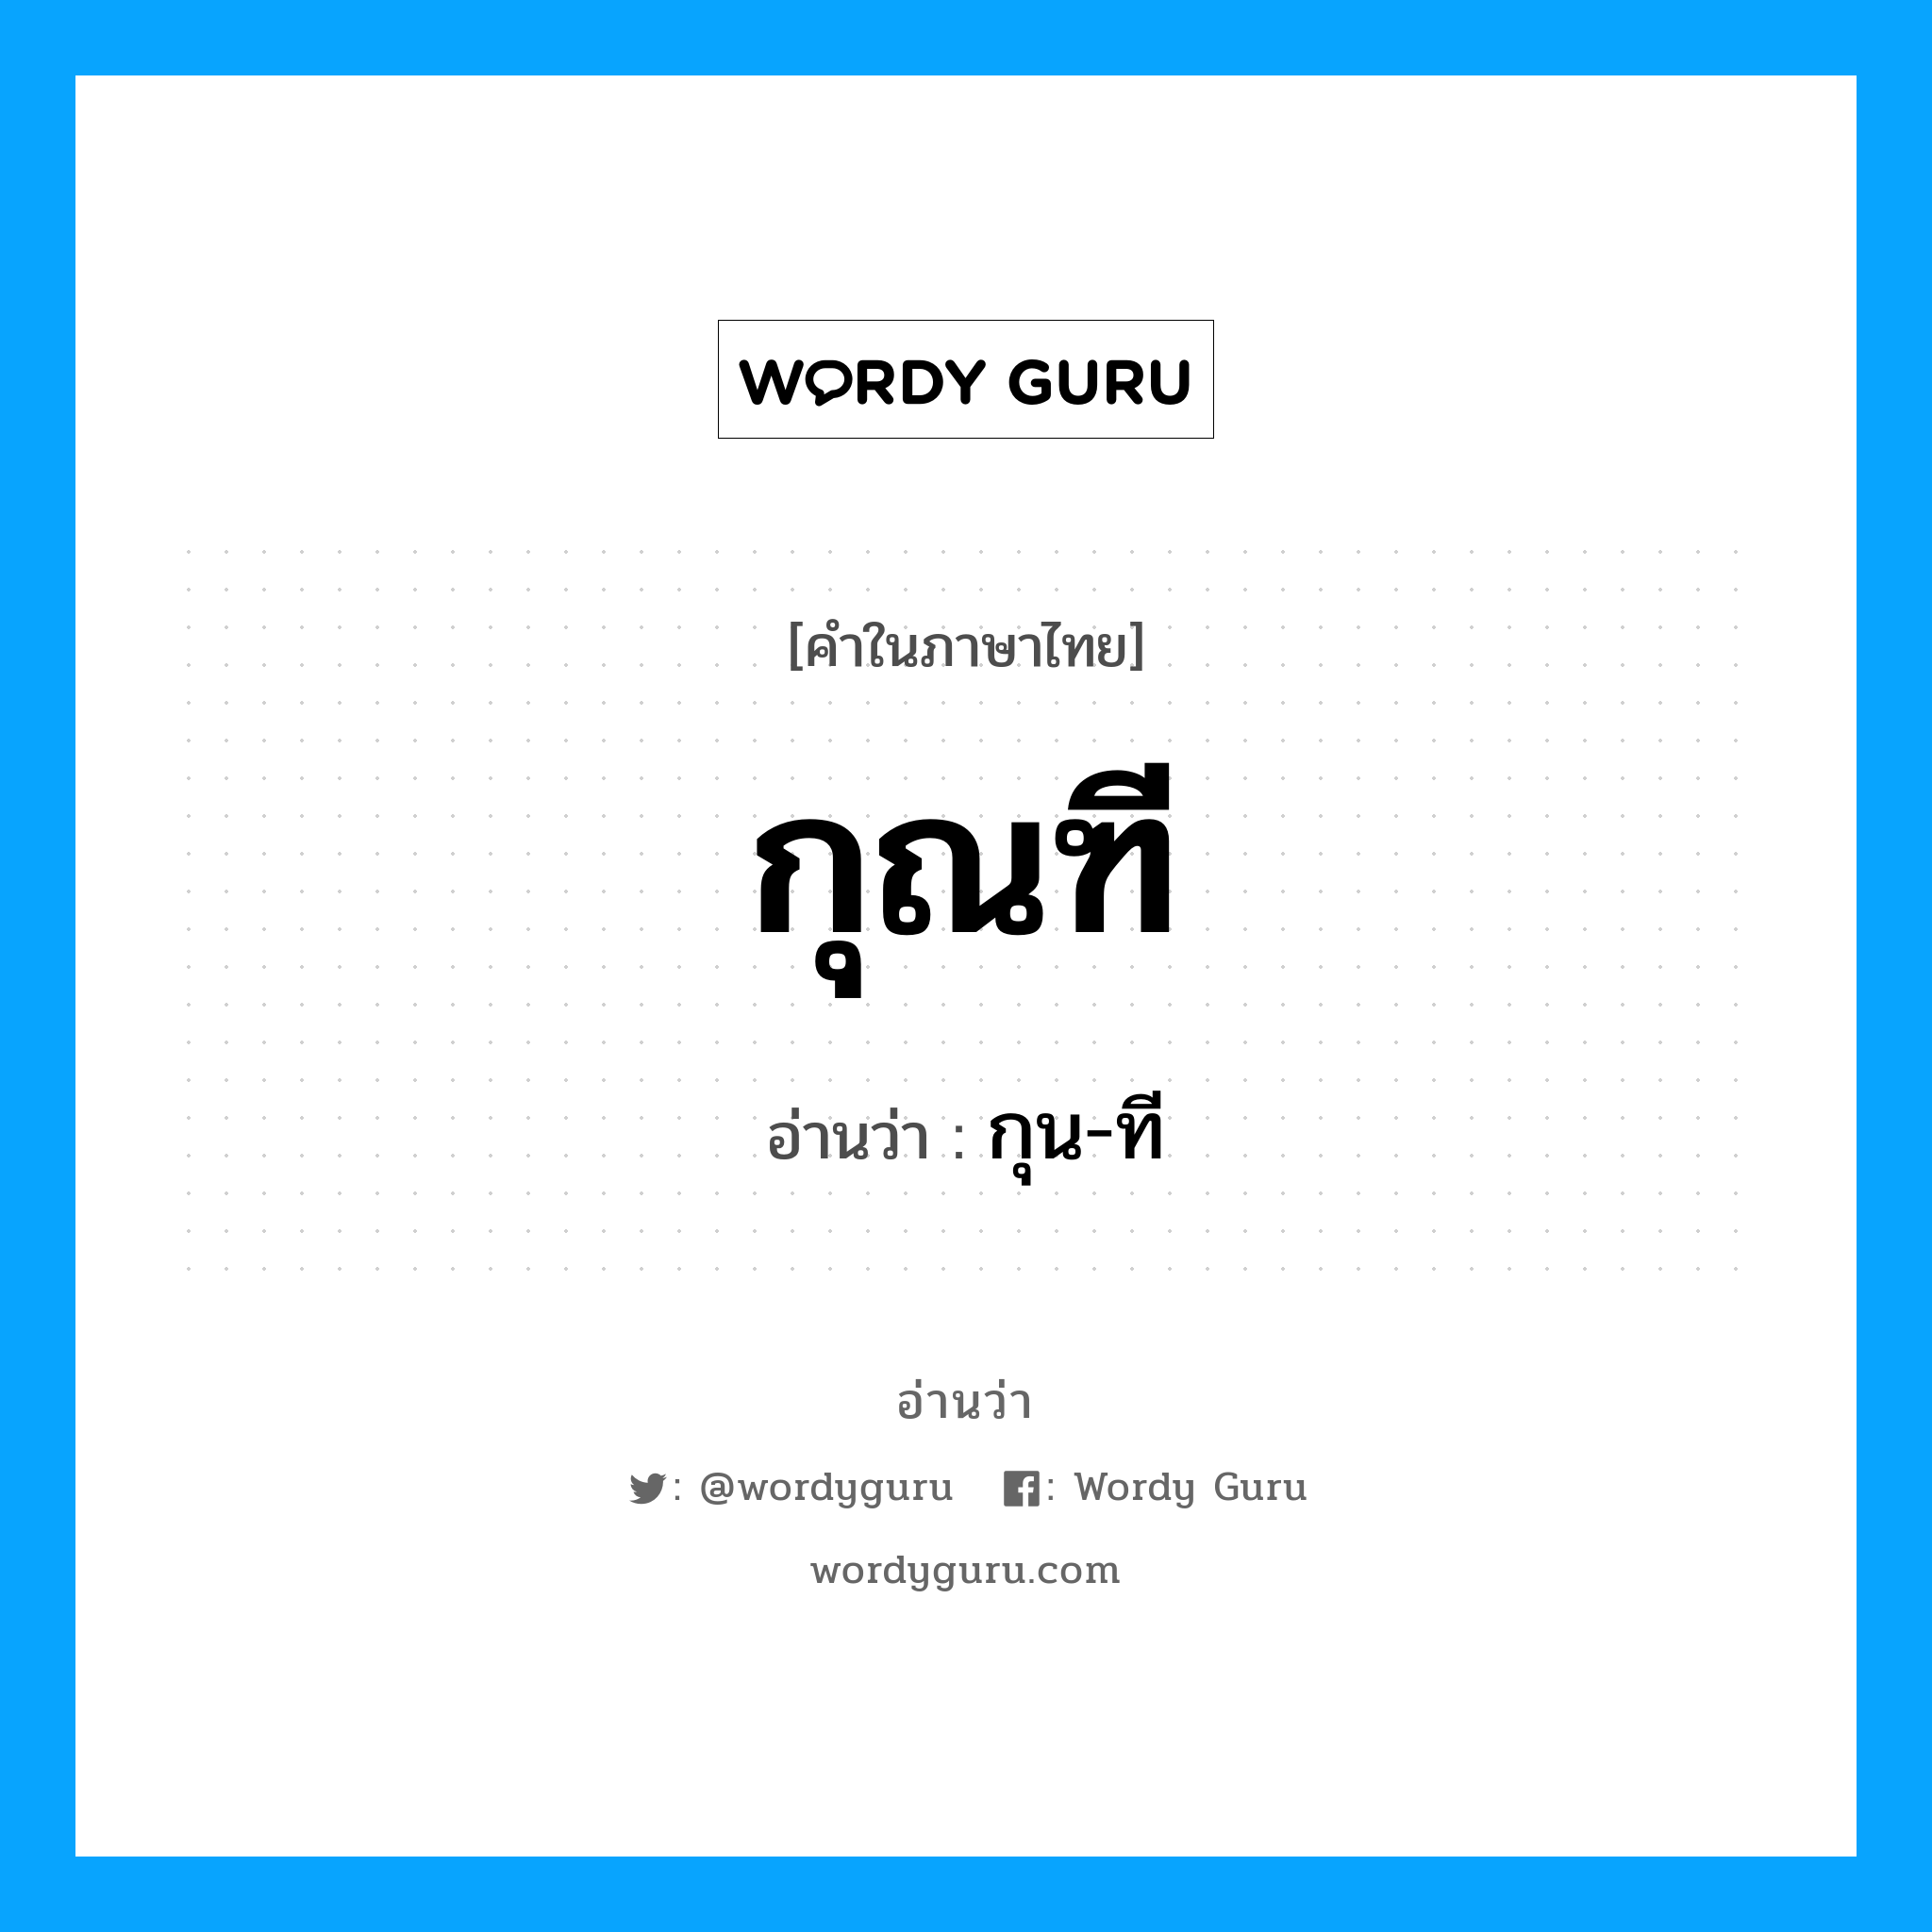 กุน-ที เป็นคำอ่านของคำไหน?, คำในภาษาไทย กุน-ที อ่านว่า กุณฑี